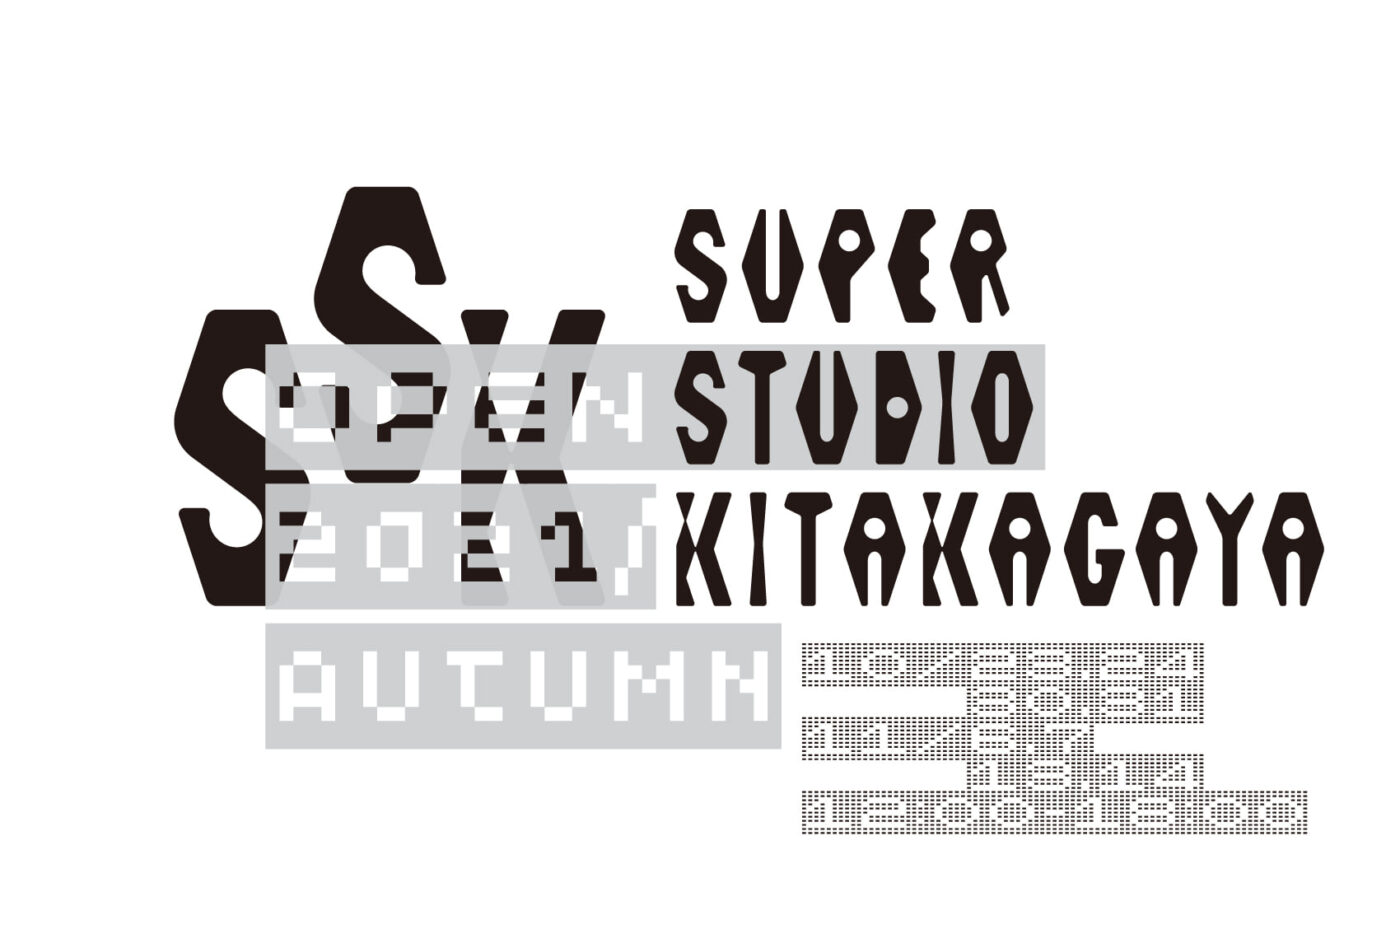 アーティスト・クリエイター向けシェアスタジオ「Super Studio Kitakagaya」にて、「Open Studio 2021 Autumn」。スタジオの一般公開に加え、3組の入居アーティストが新作を発表。